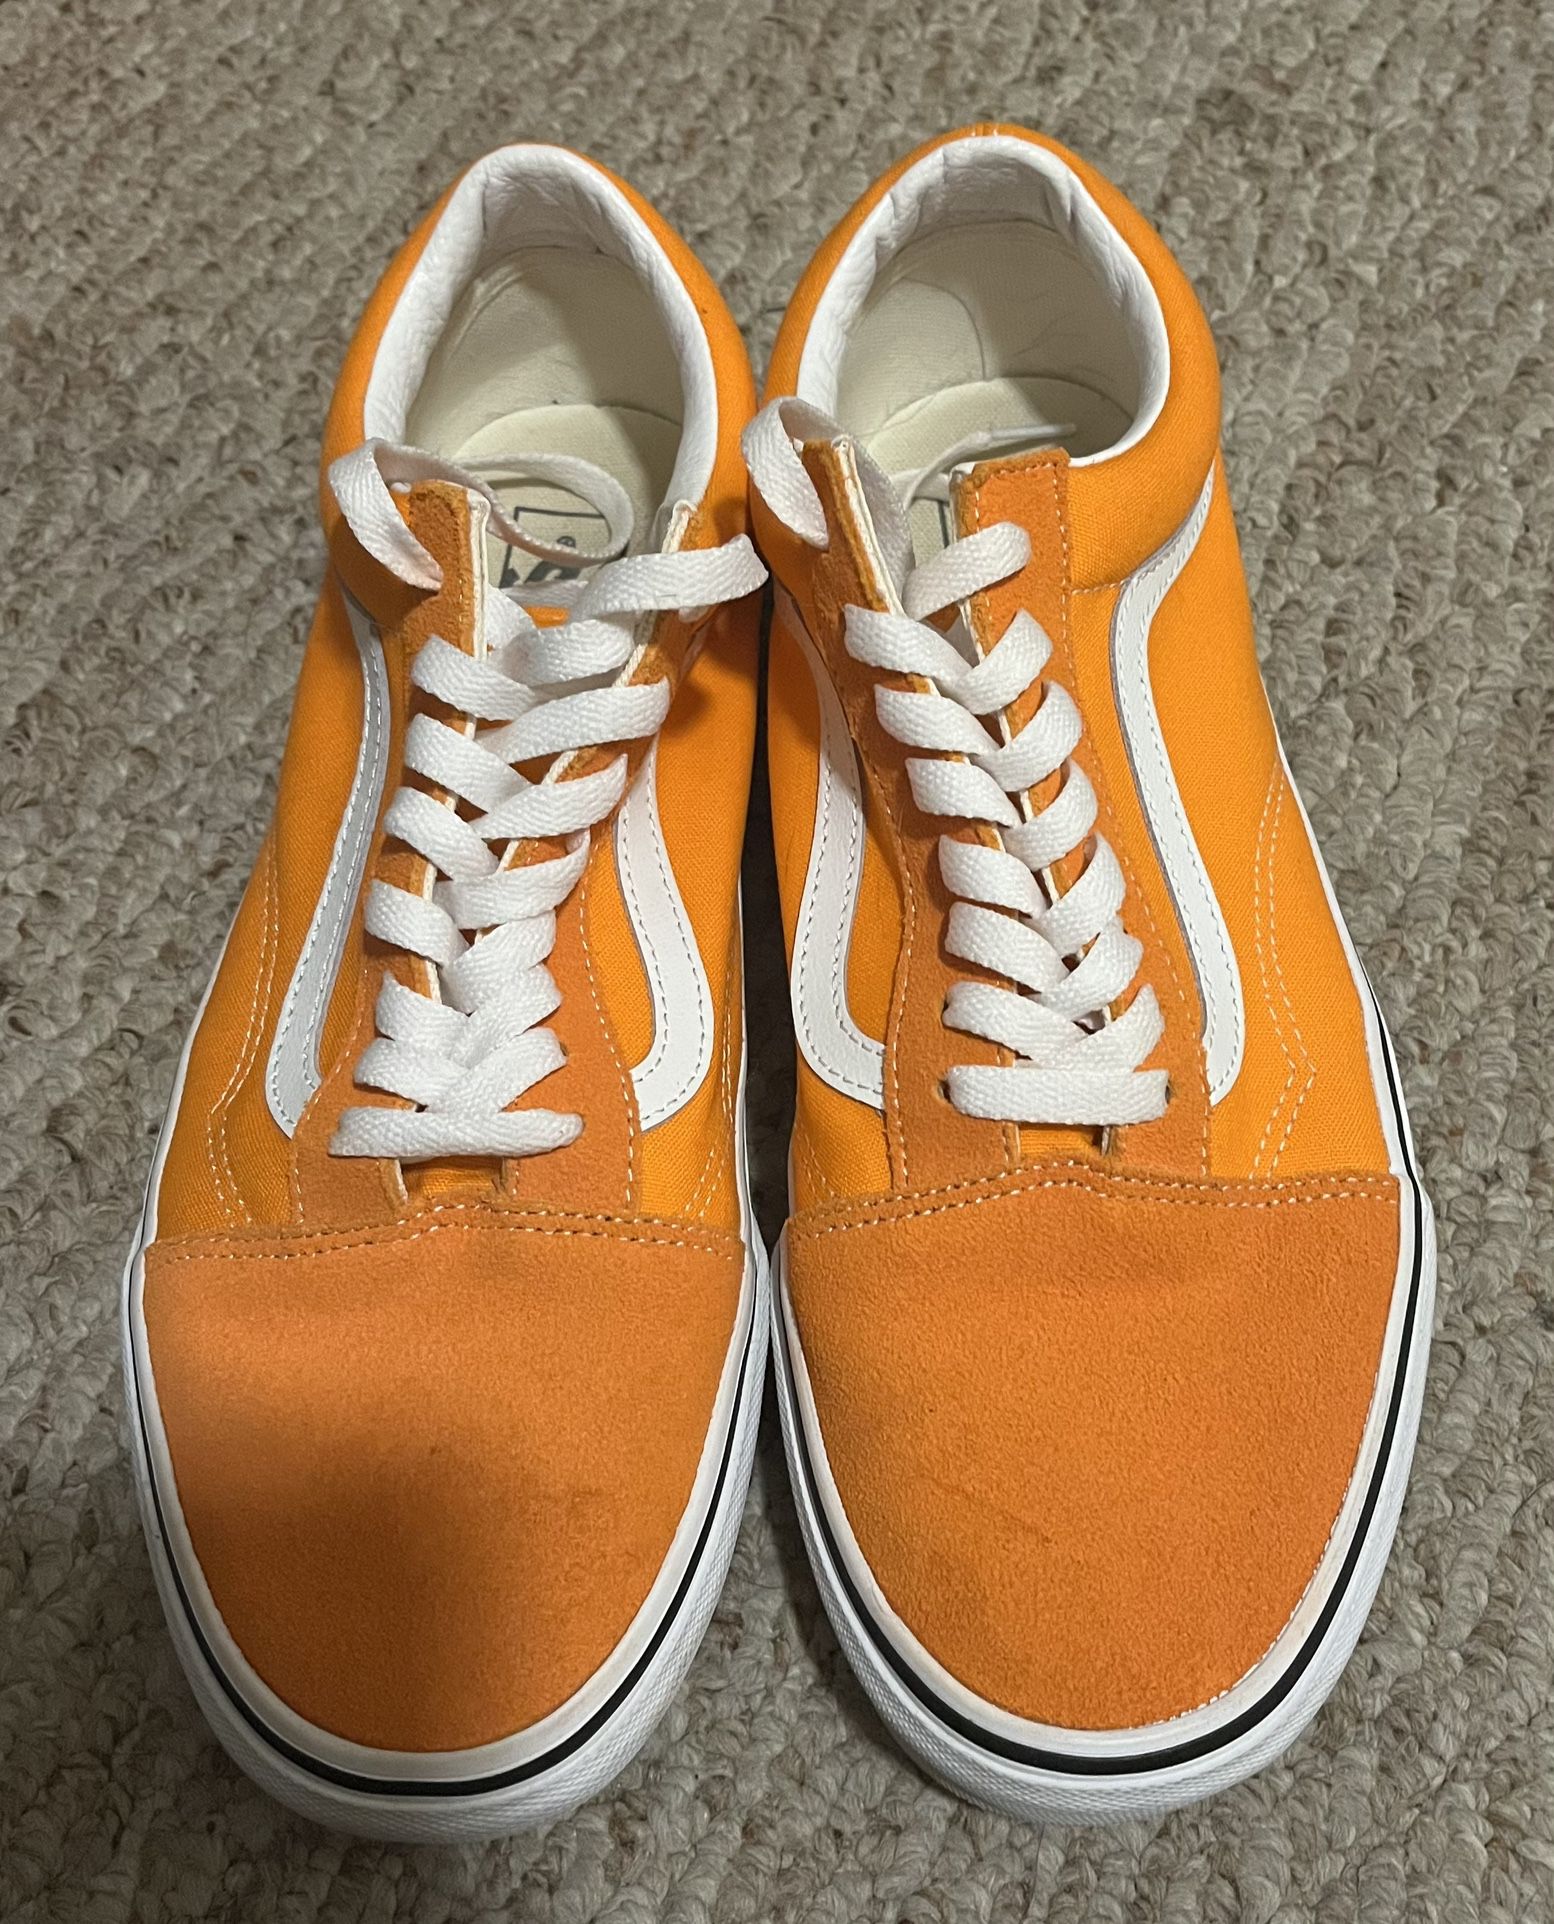 Vans Old Skool Orange Tiger Shoes